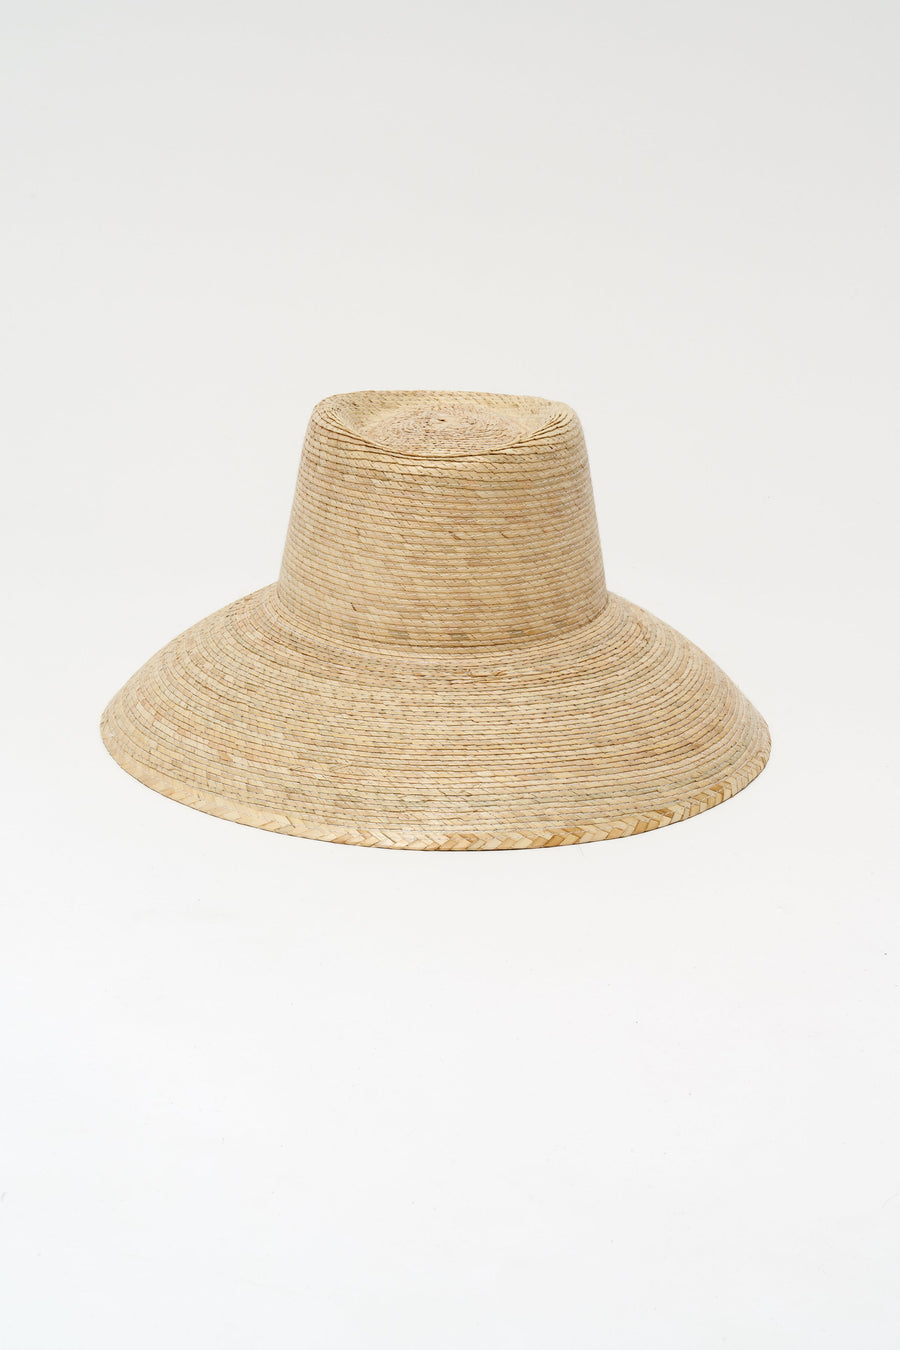 Communitie Marfa Garden Hat